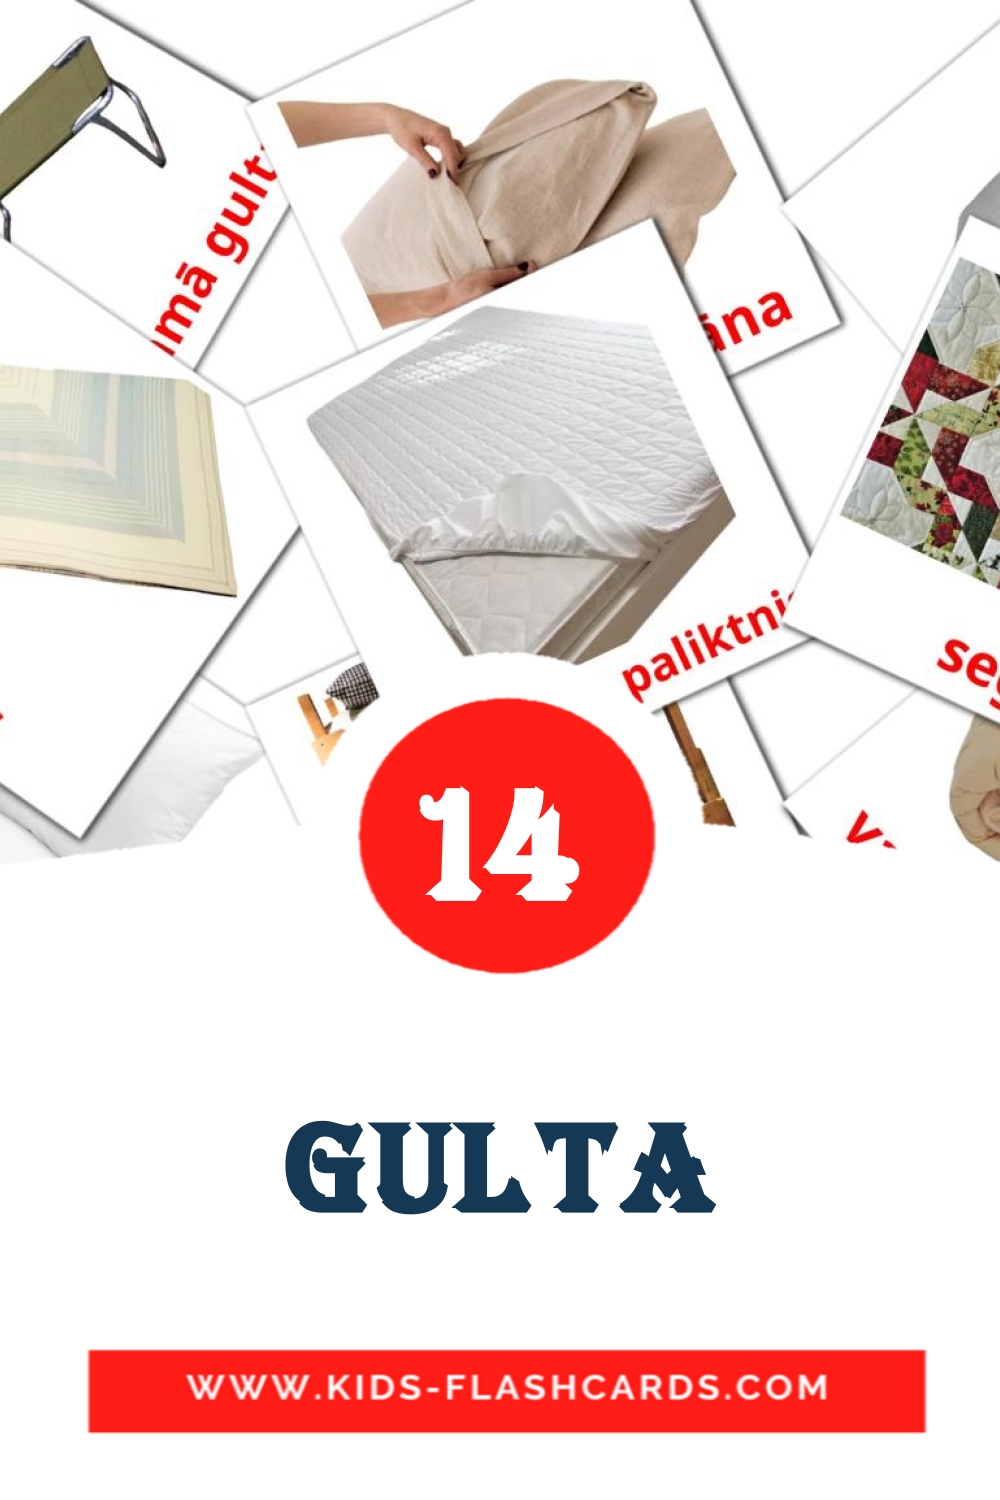 14 carte illustrate di Gulta per la scuola materna in lettone